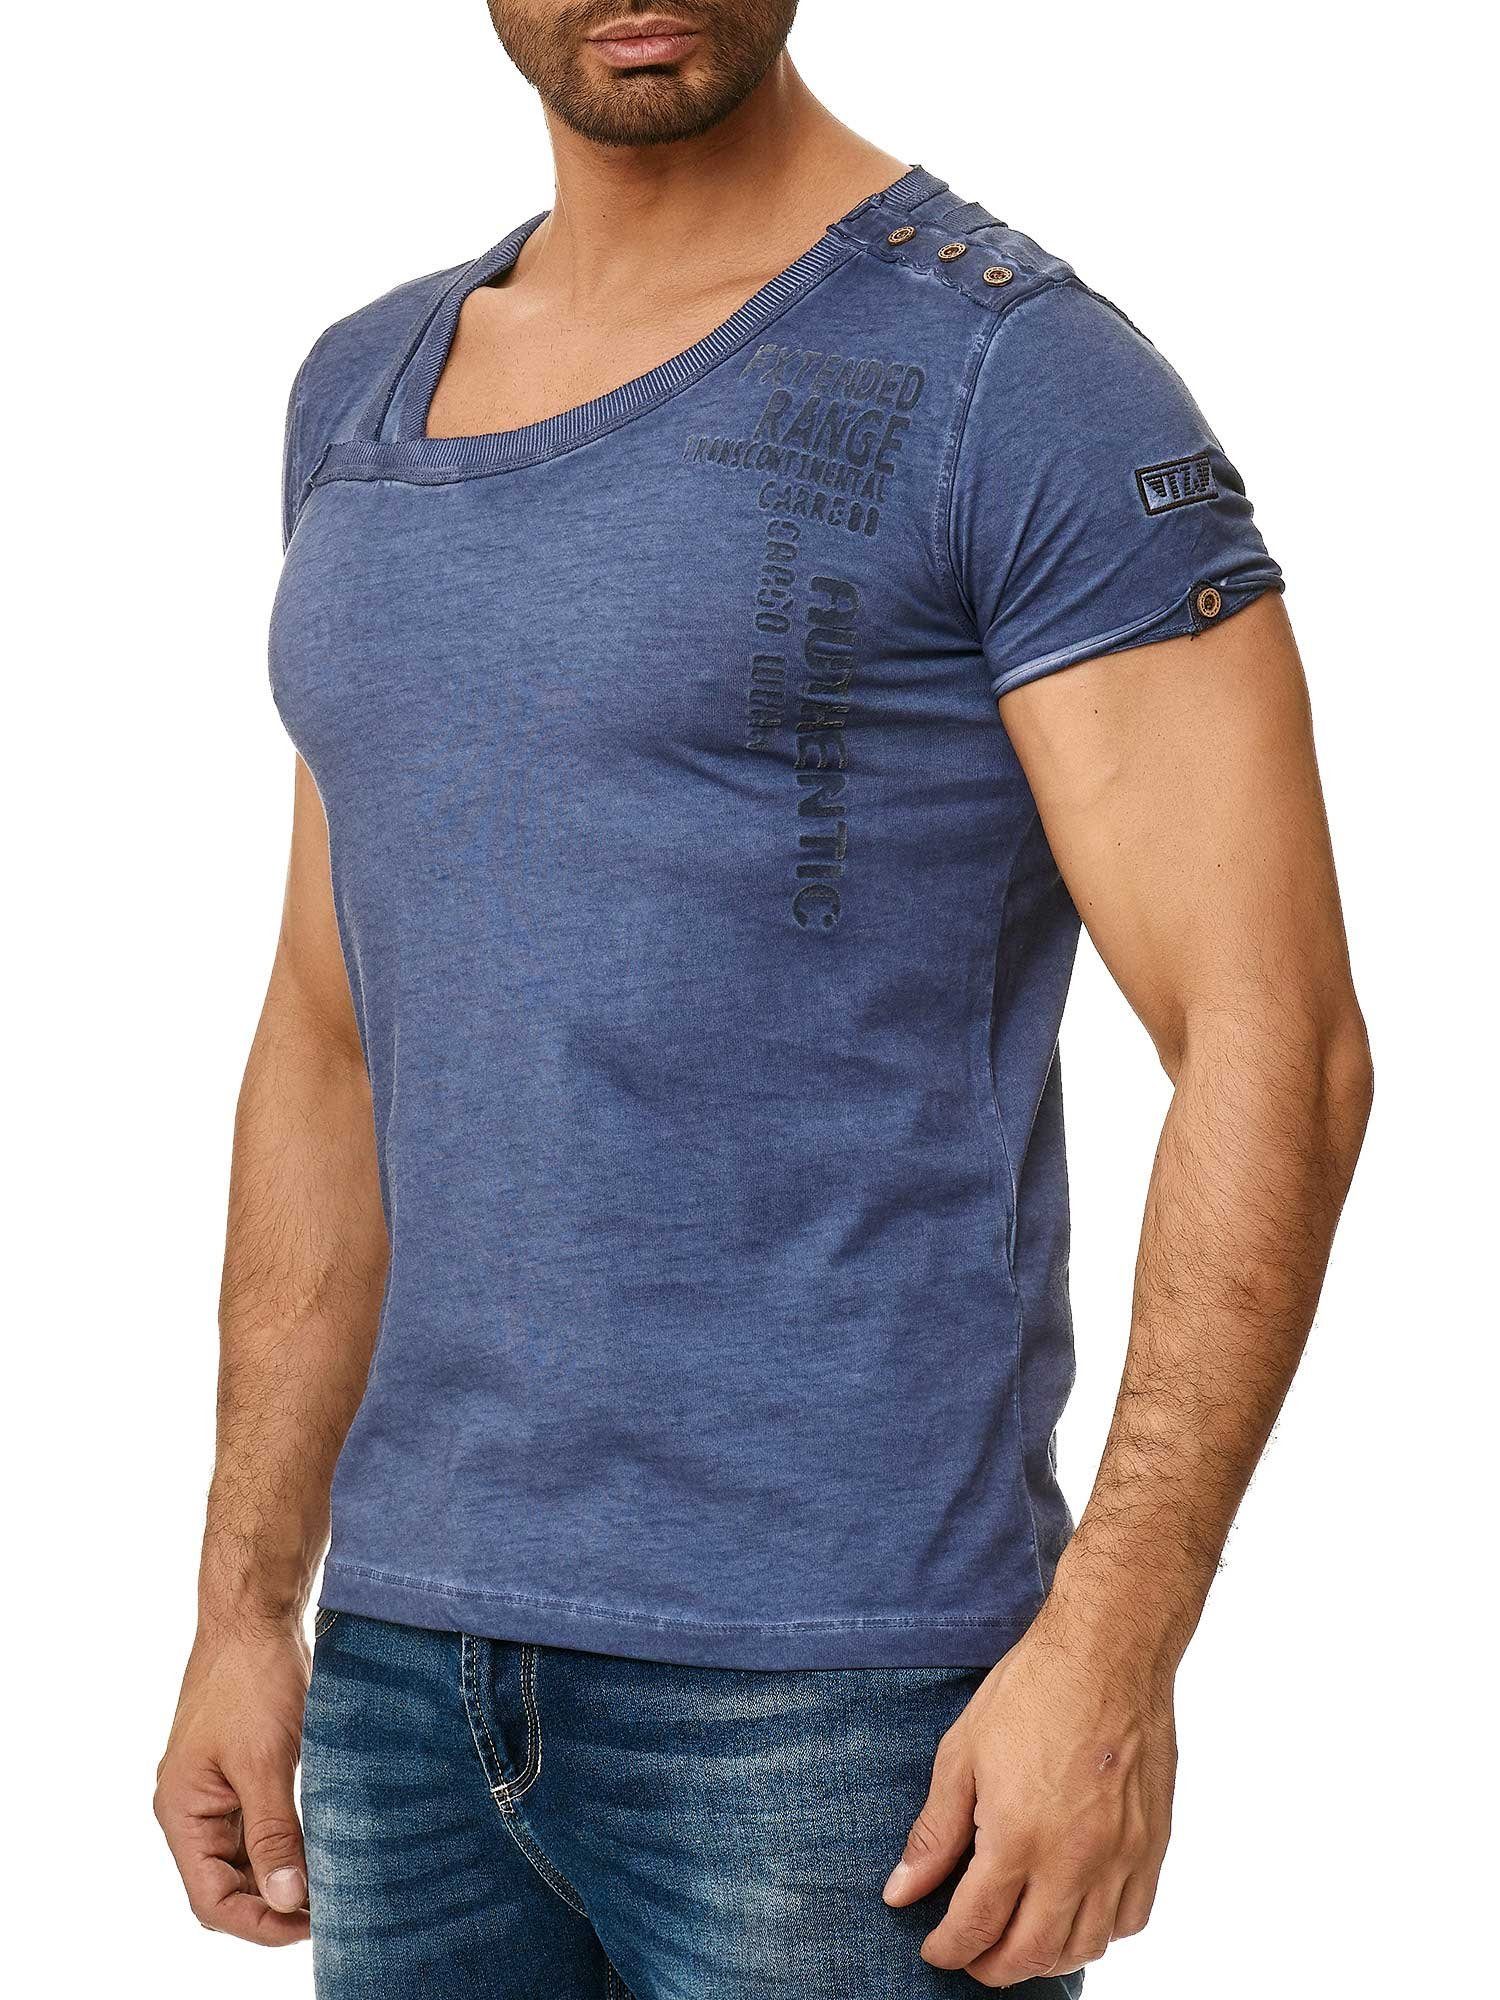 Tazzio T-Shirt 4022 in Ölwaschung Knopfleiste und der an trendiger stylischem Schulter mit navy Kragen